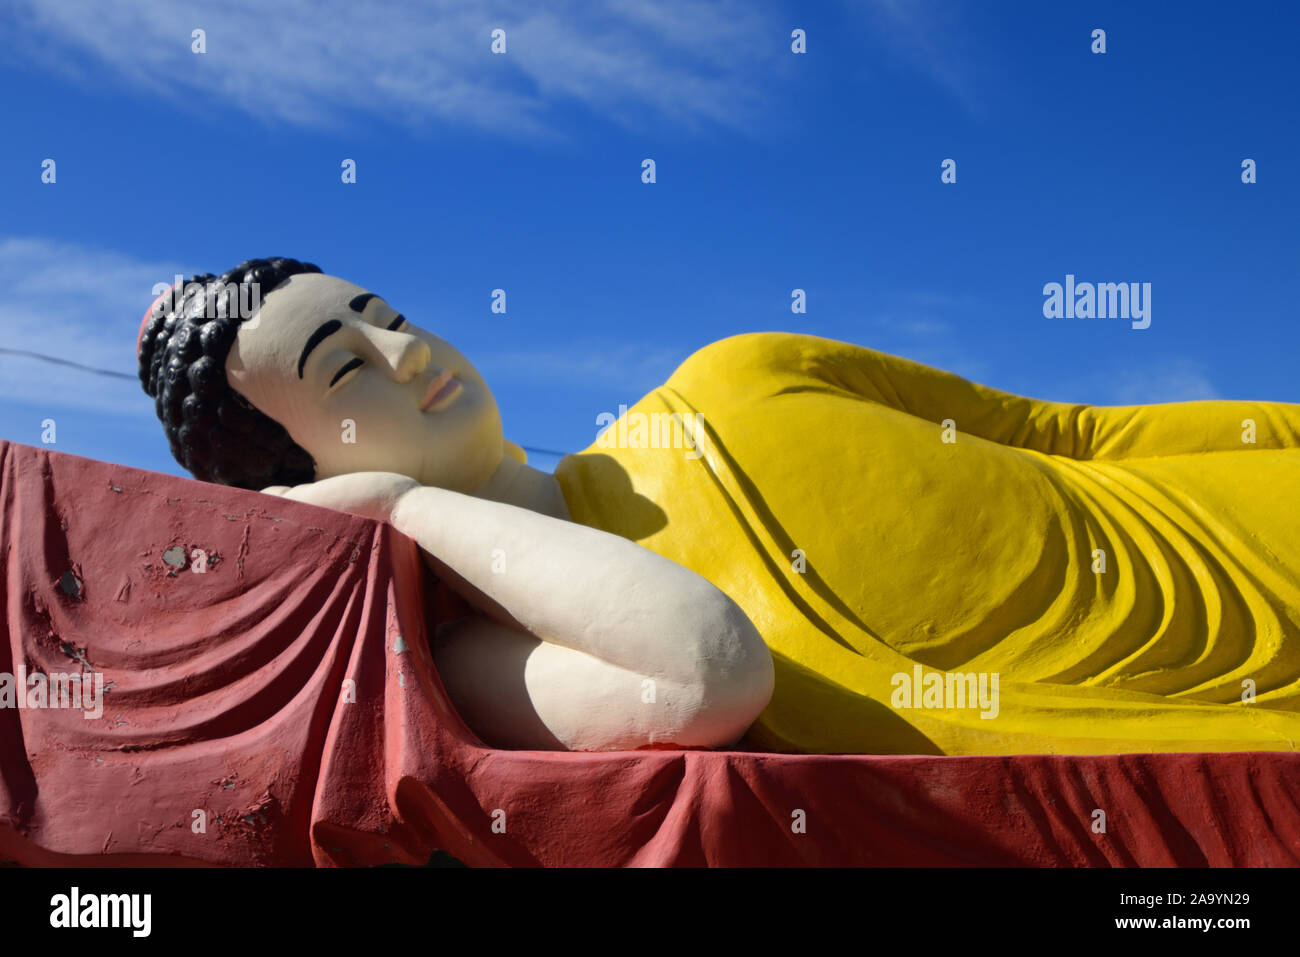 Buda reclinado de la pagoda budista vietnamita, o Pagode Phap Hoa, fundada en 1978, en Marsella, Francia Foto de stock